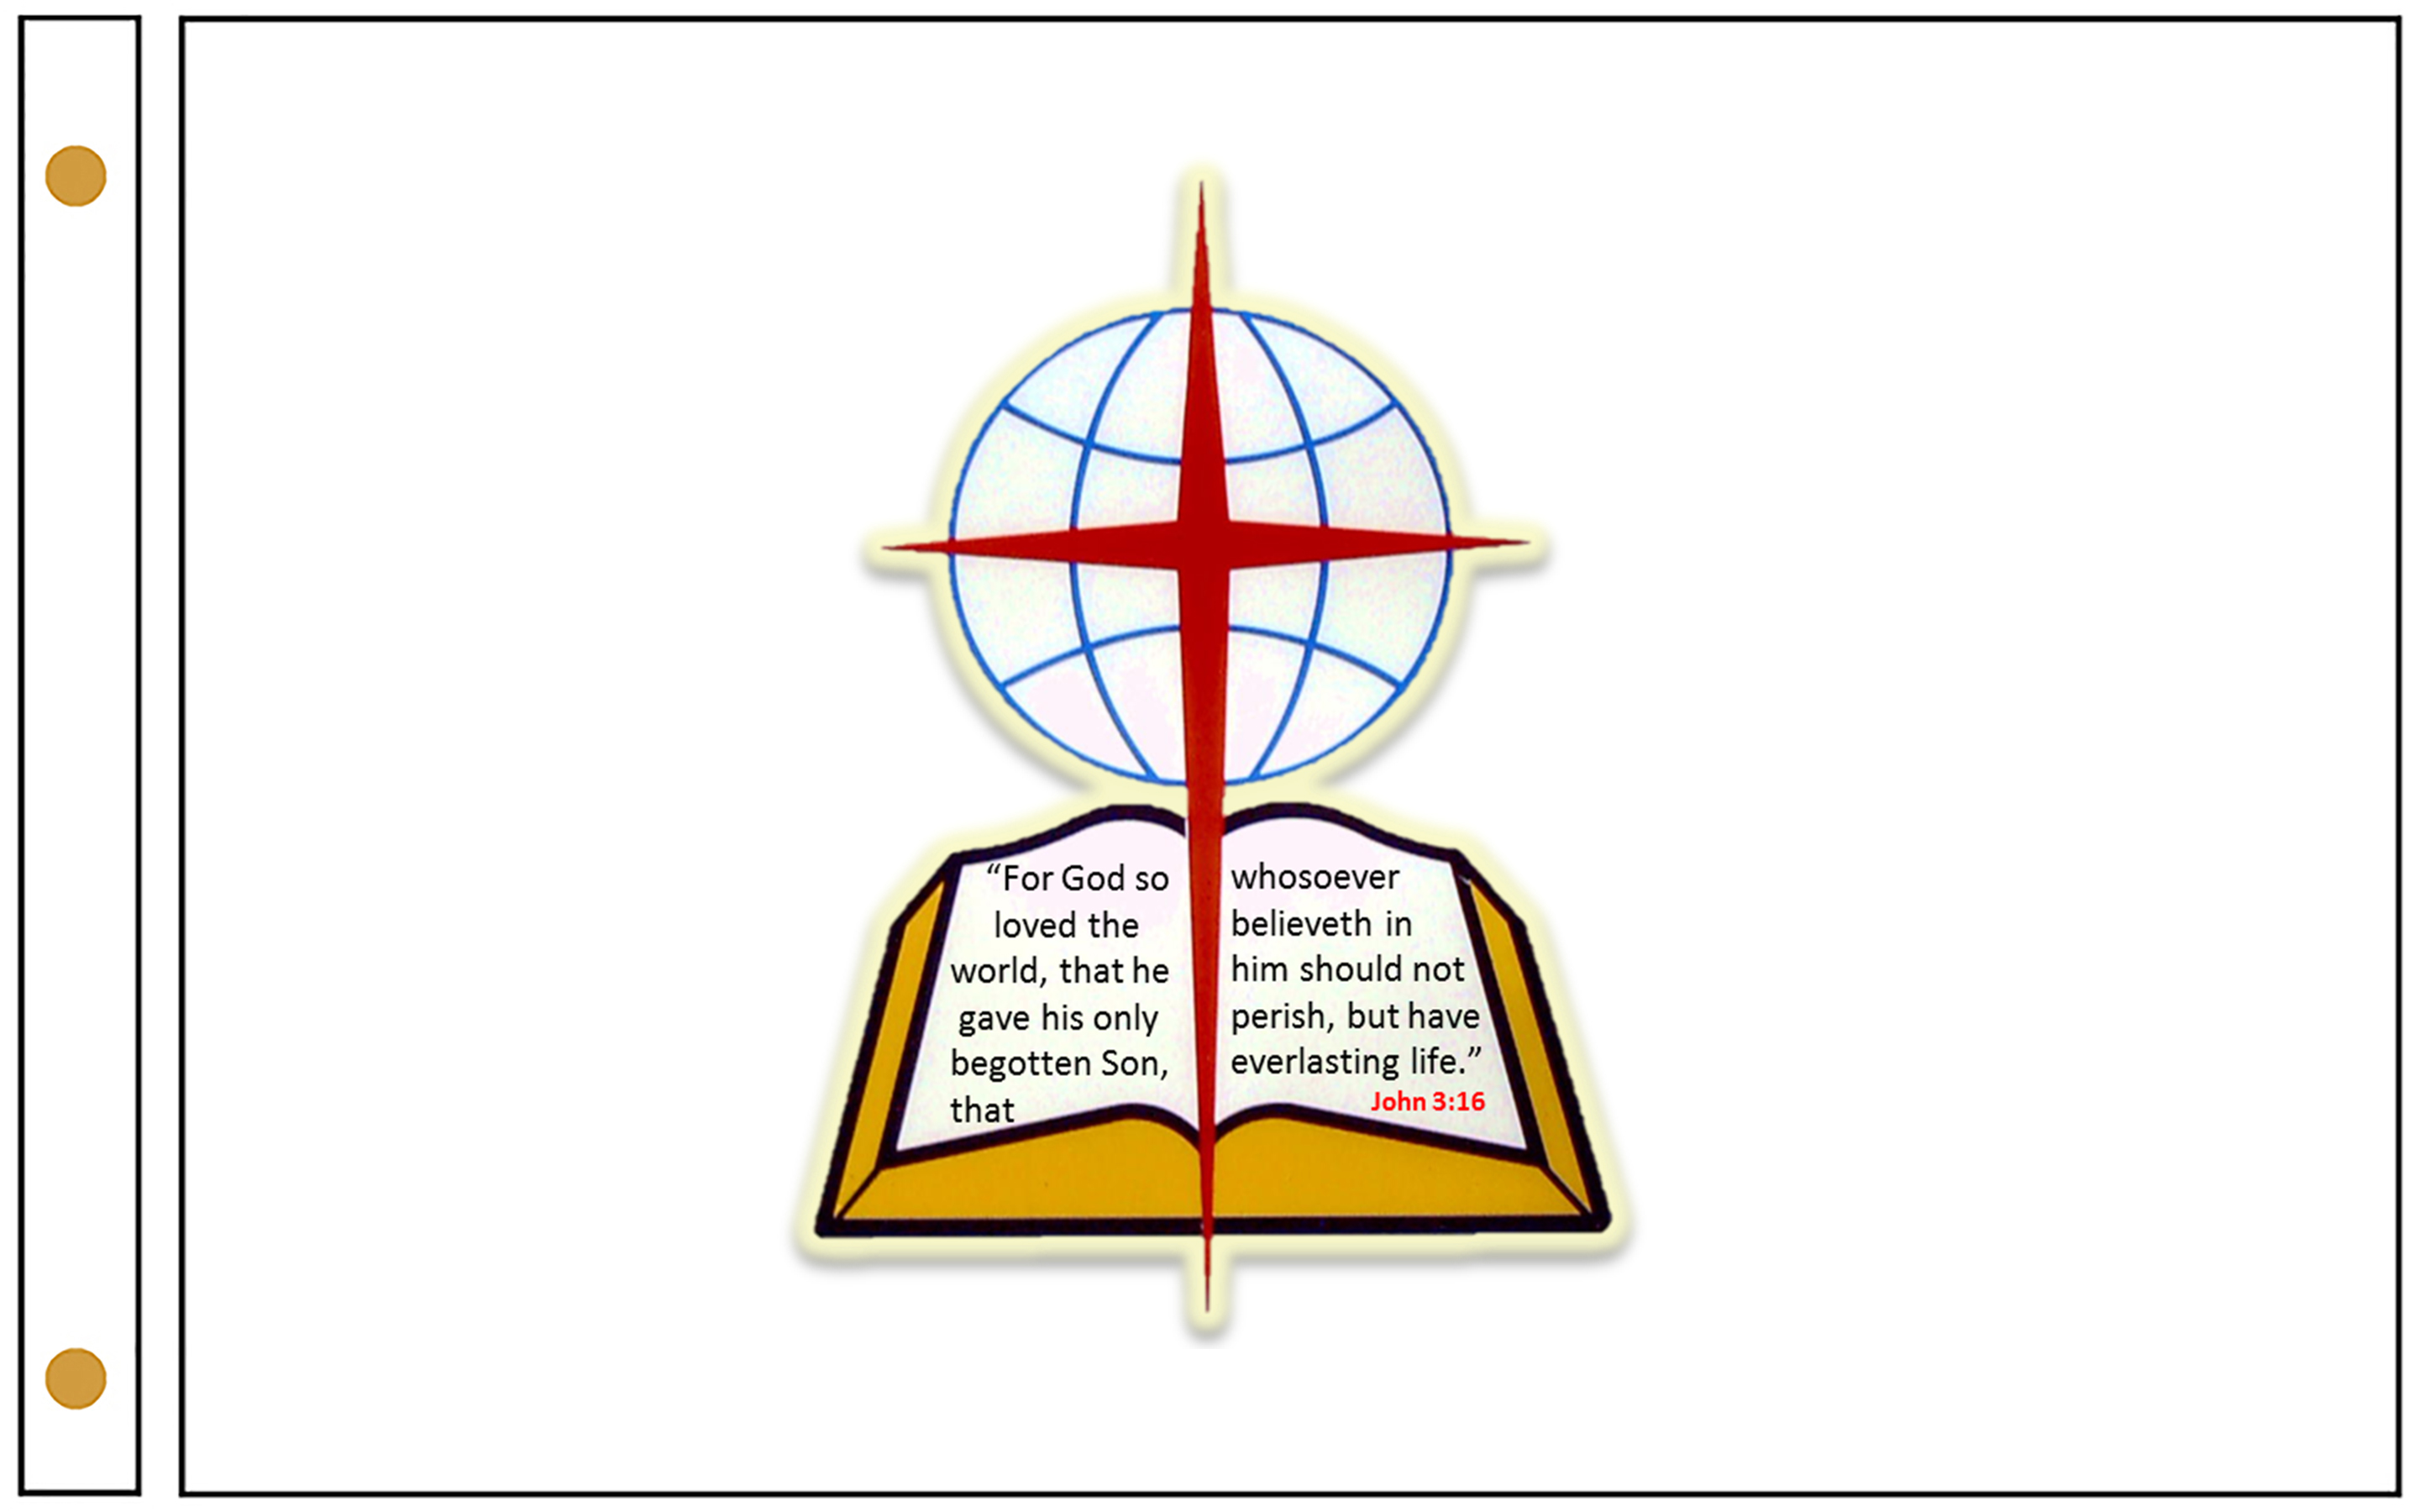 southern baptist logo